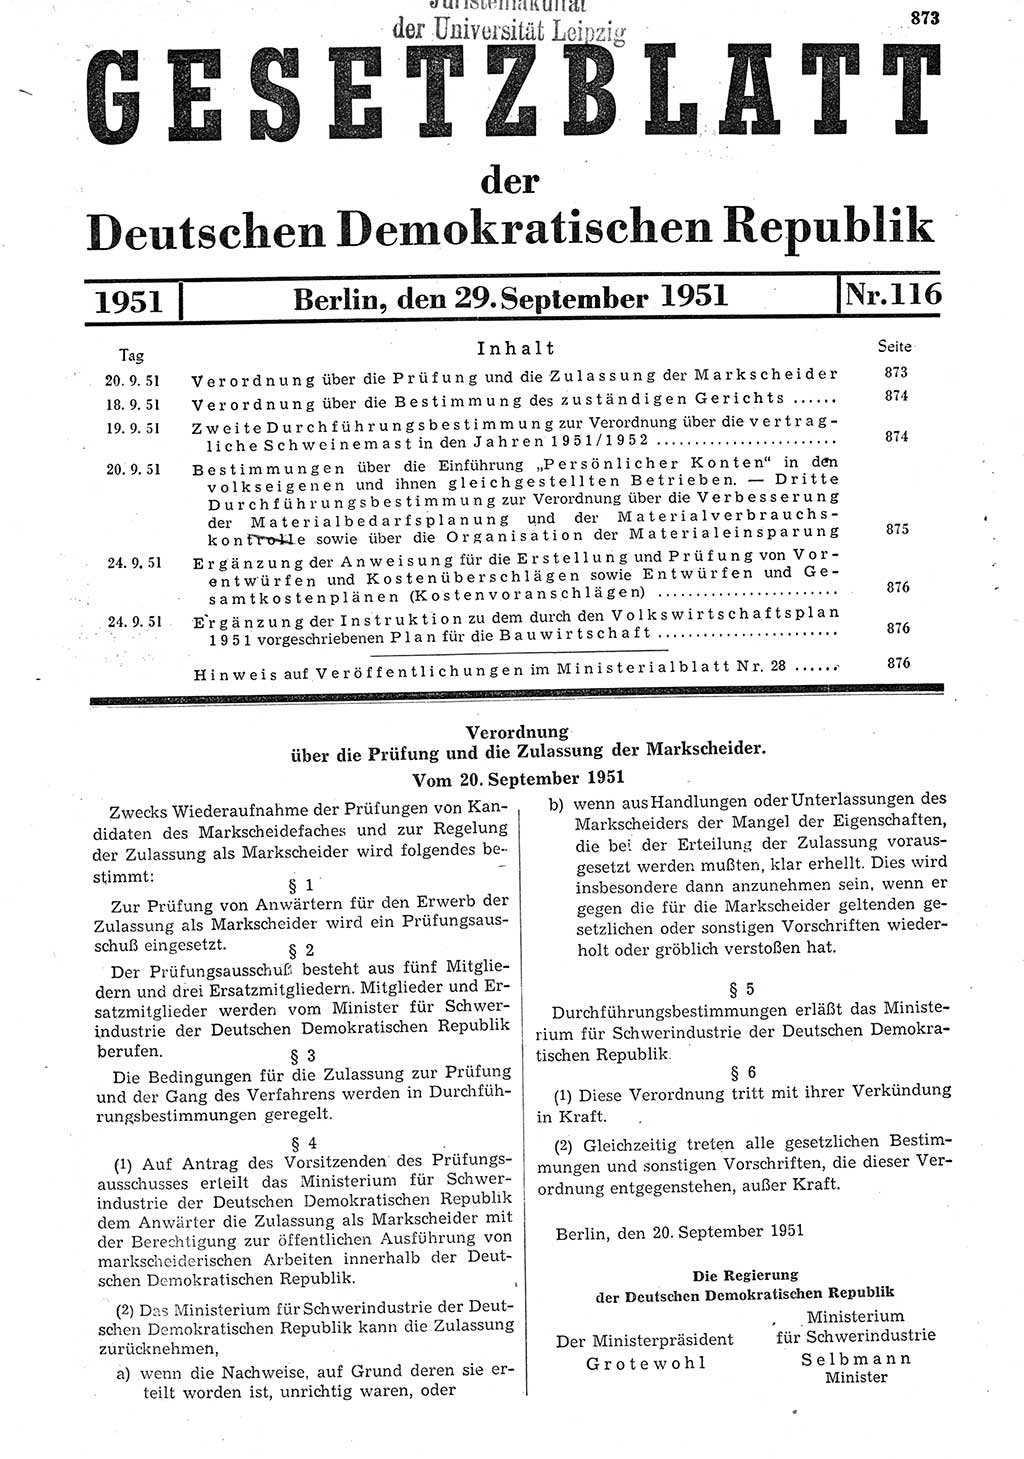 Gesetzblatt (GBl.) der Deutschen Demokratischen Republik (DDR) 1951, Seite 873 (GBl. DDR 1951, S. 873)